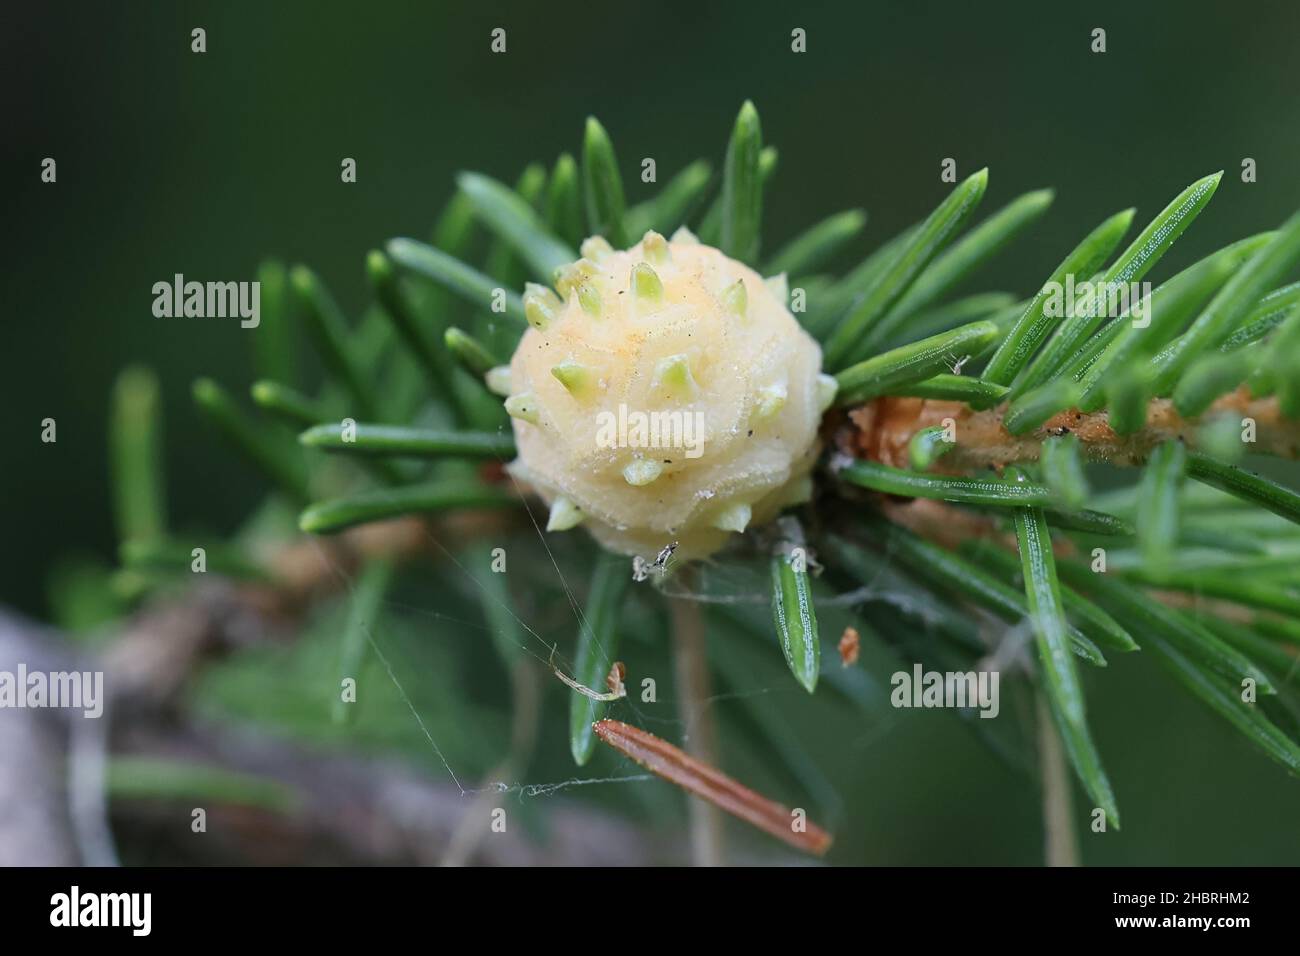 Adelges laricis, bekannt als blass Fichtengall adelgid, eine Pflanze, die auf der europäischen Fichte, Picea abies, Parasitengallen bildet Stockfoto